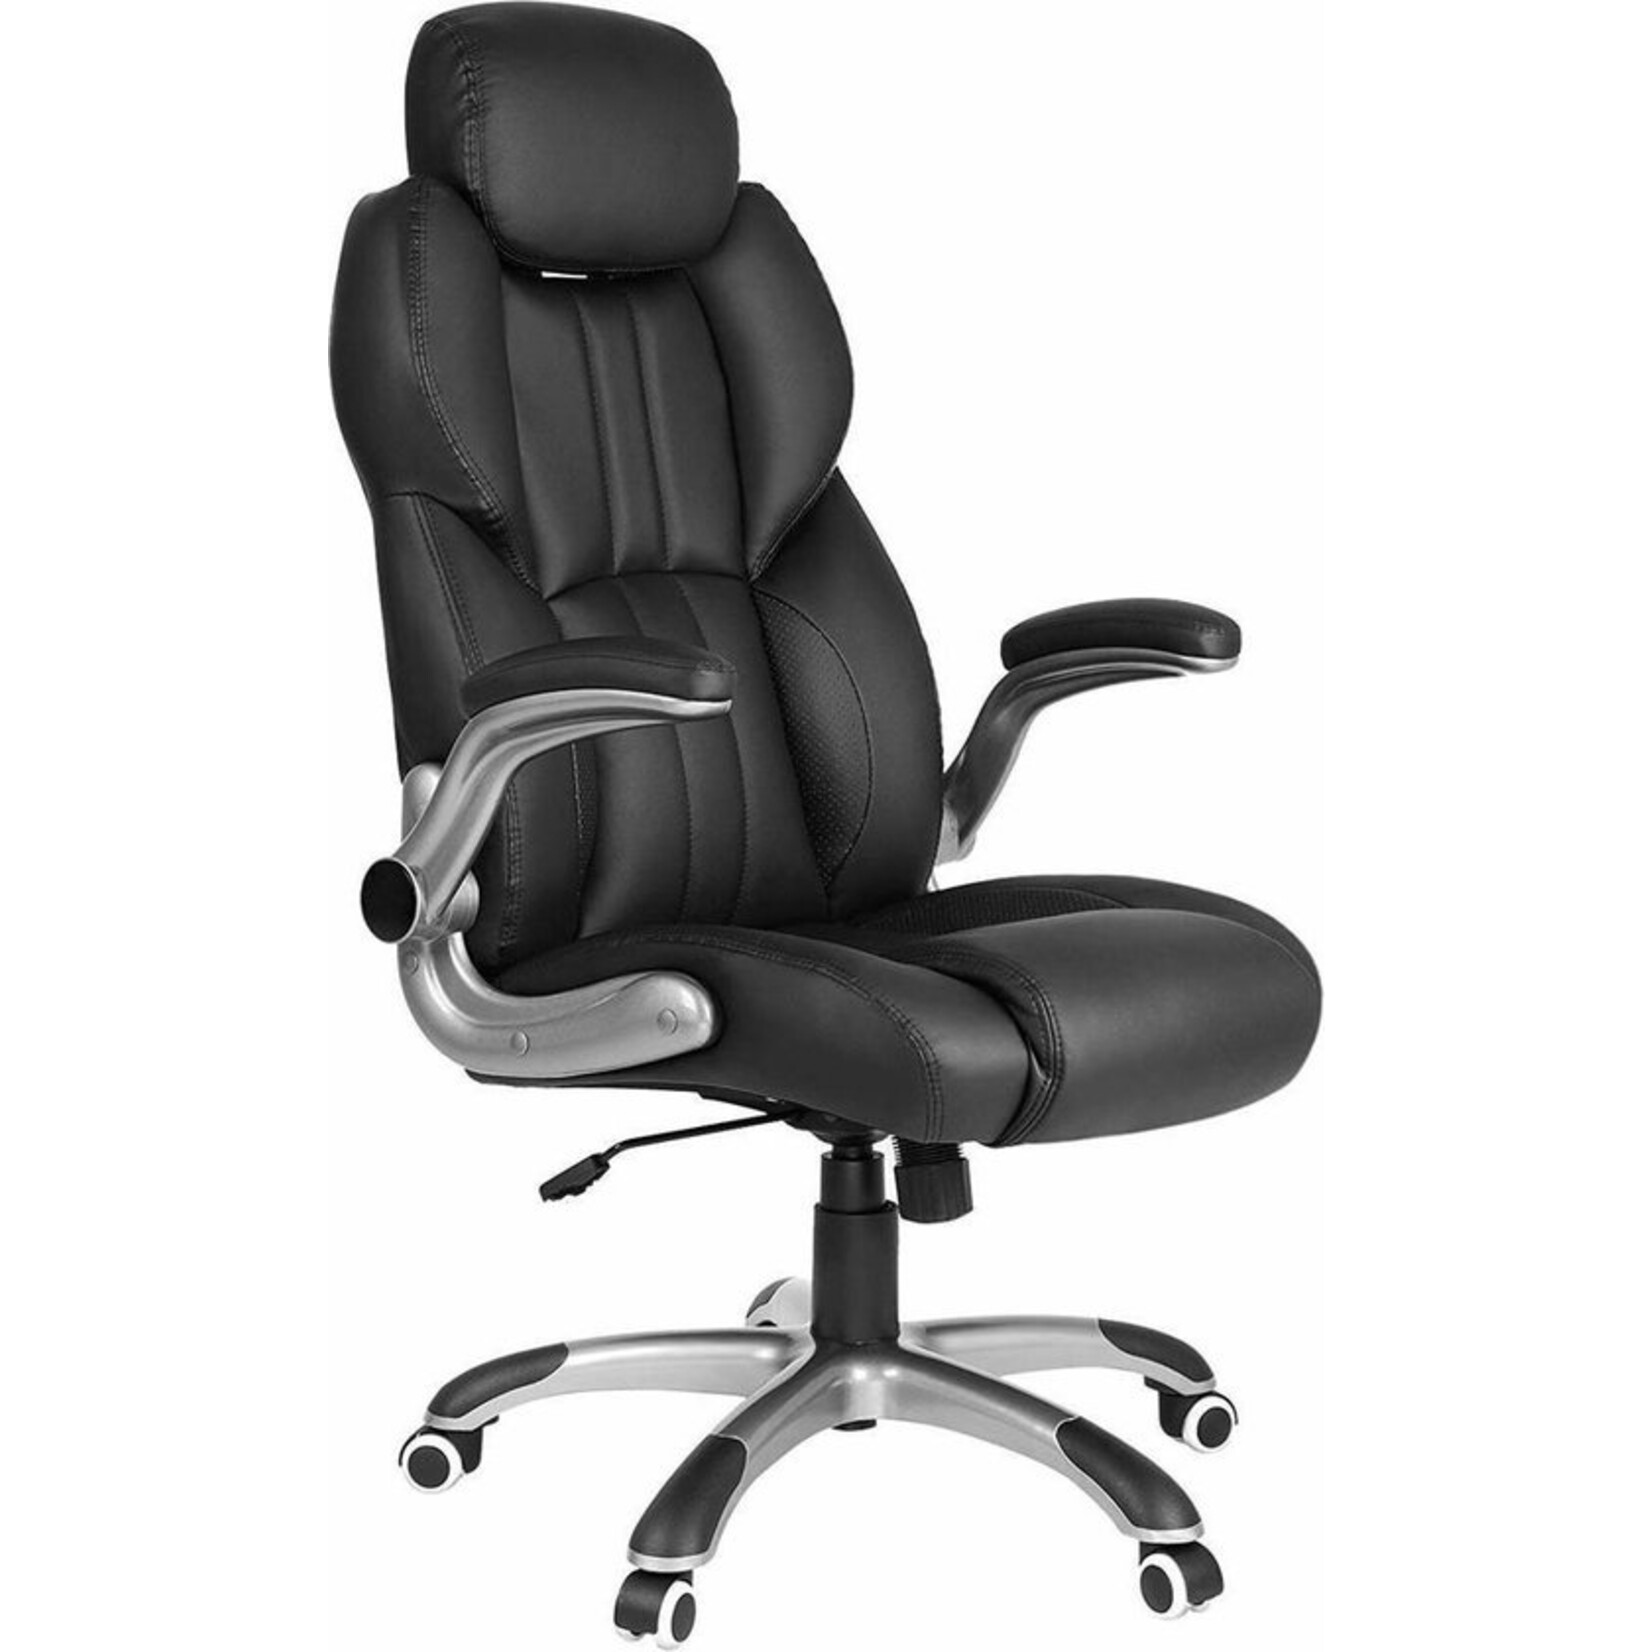 Bobbel Home Dok Home - Ergonomic office chair - Black